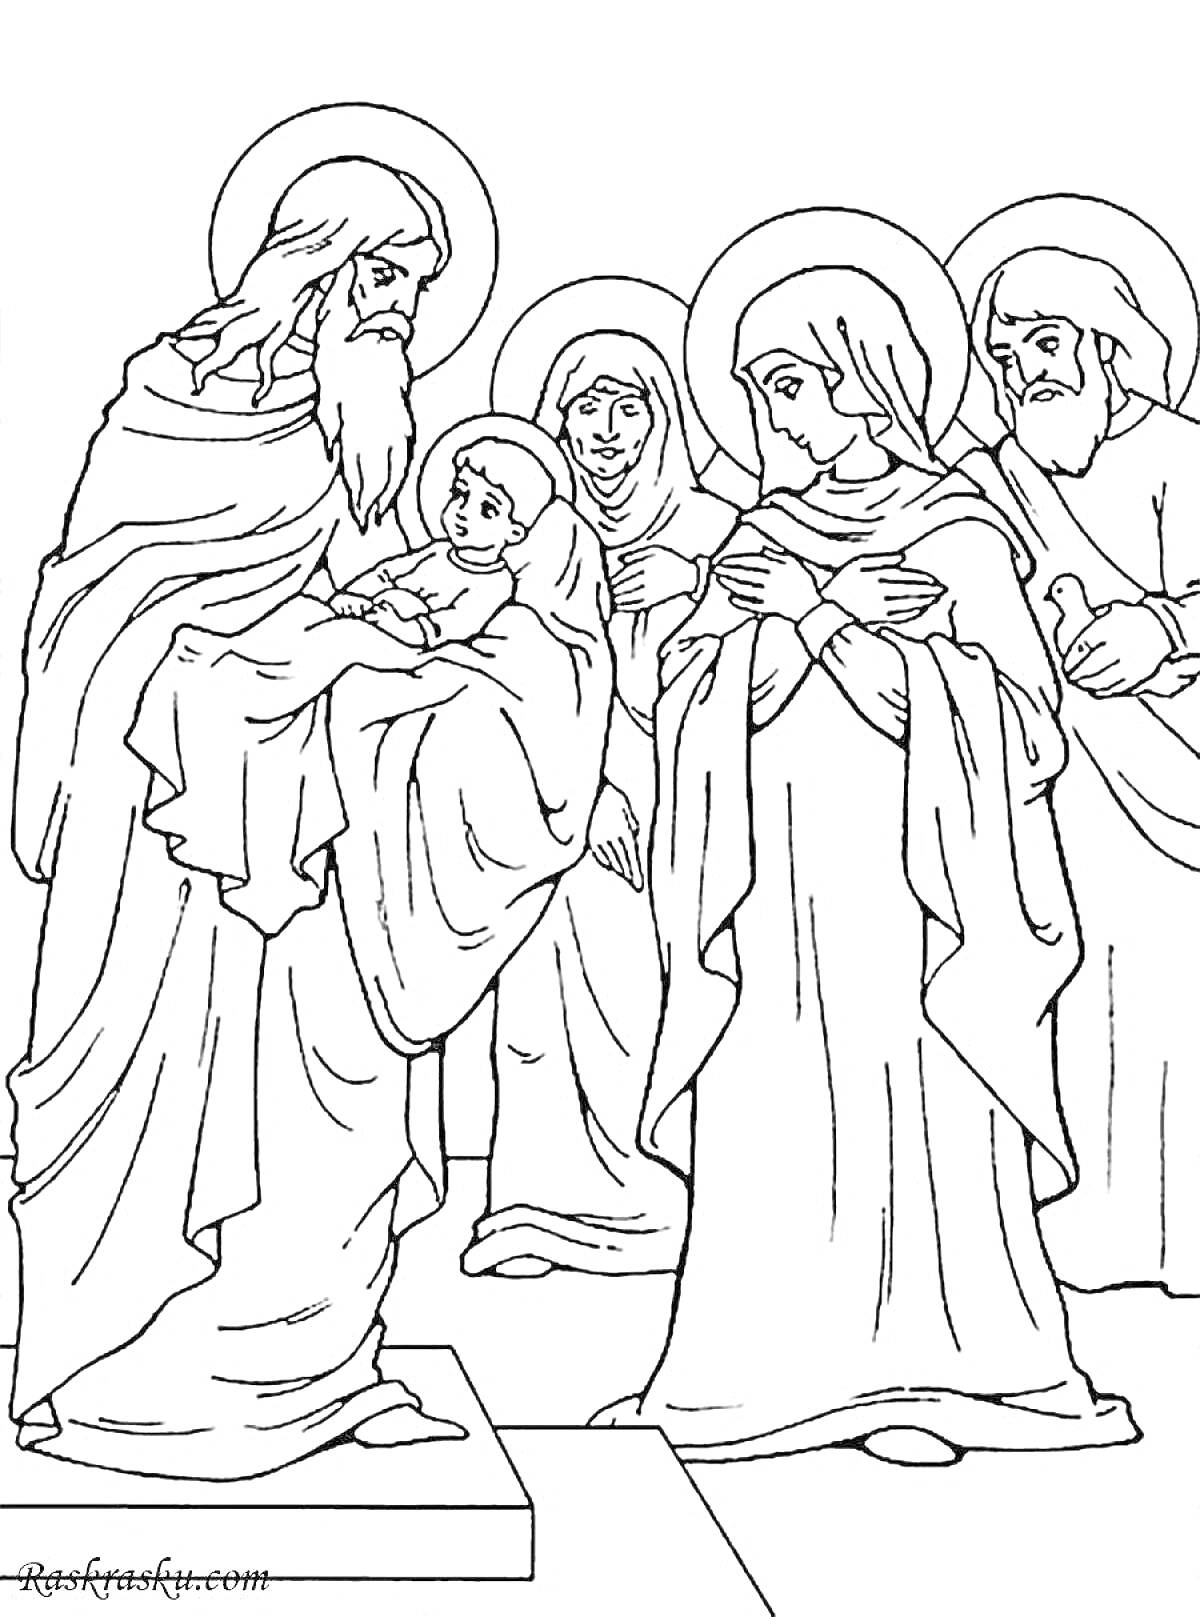 Раскраска Сретение Господне, где пожилой мужчина держит младенца на руках, рядом стоят еще трое взрослых людей с нимбами